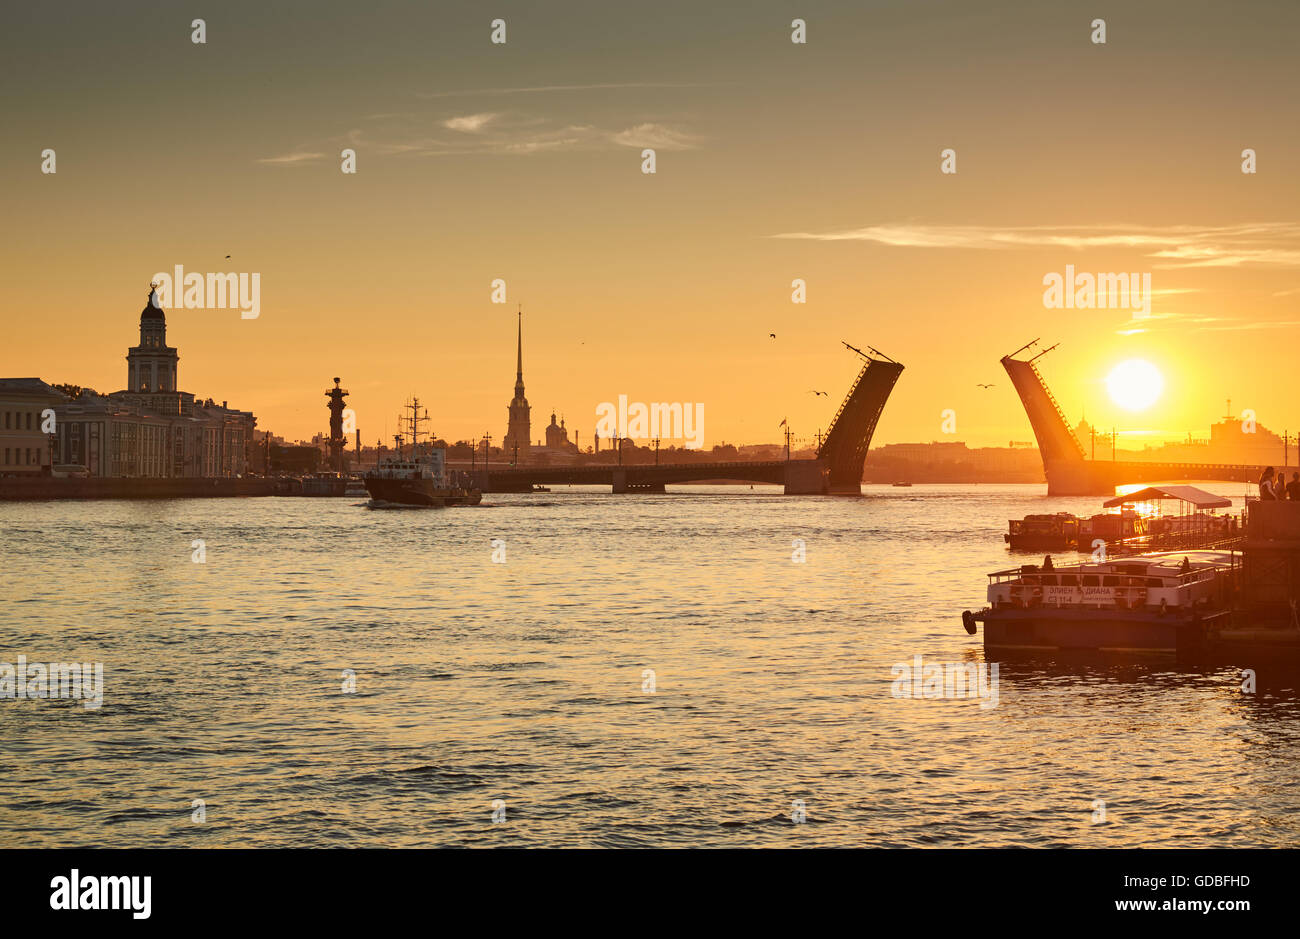 La Russie, Saint-Petersbourg, 03 juillet 2016 : Fermeture du Palace Bridge au lever du soleil, la forteresse Pierre et Paul Spike dans le ciel orange Banque D'Images